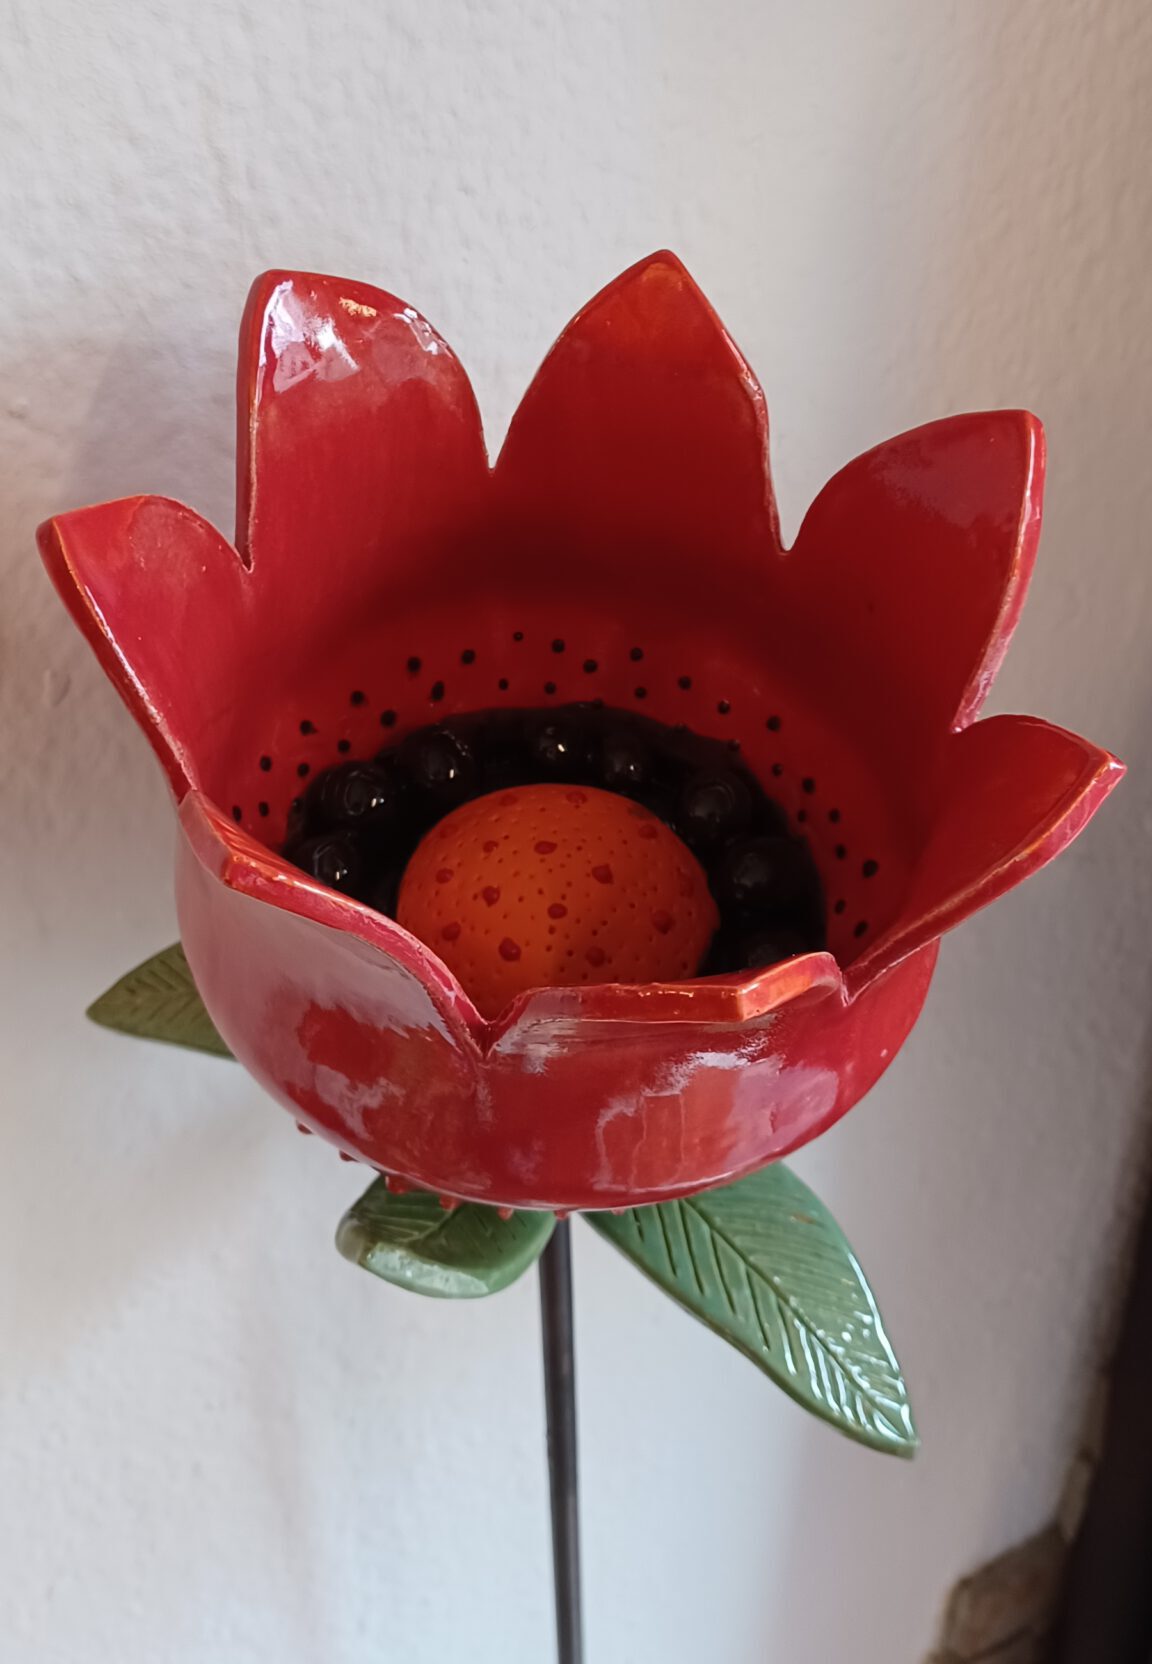 Riesenblume, Keramik Blume, handgefertigtes Garten Keramik Objekt, Garten Blume, schöne rote Keramik Riesenblume, Kunst für den Garten, KeraMik von Herz zu Herz